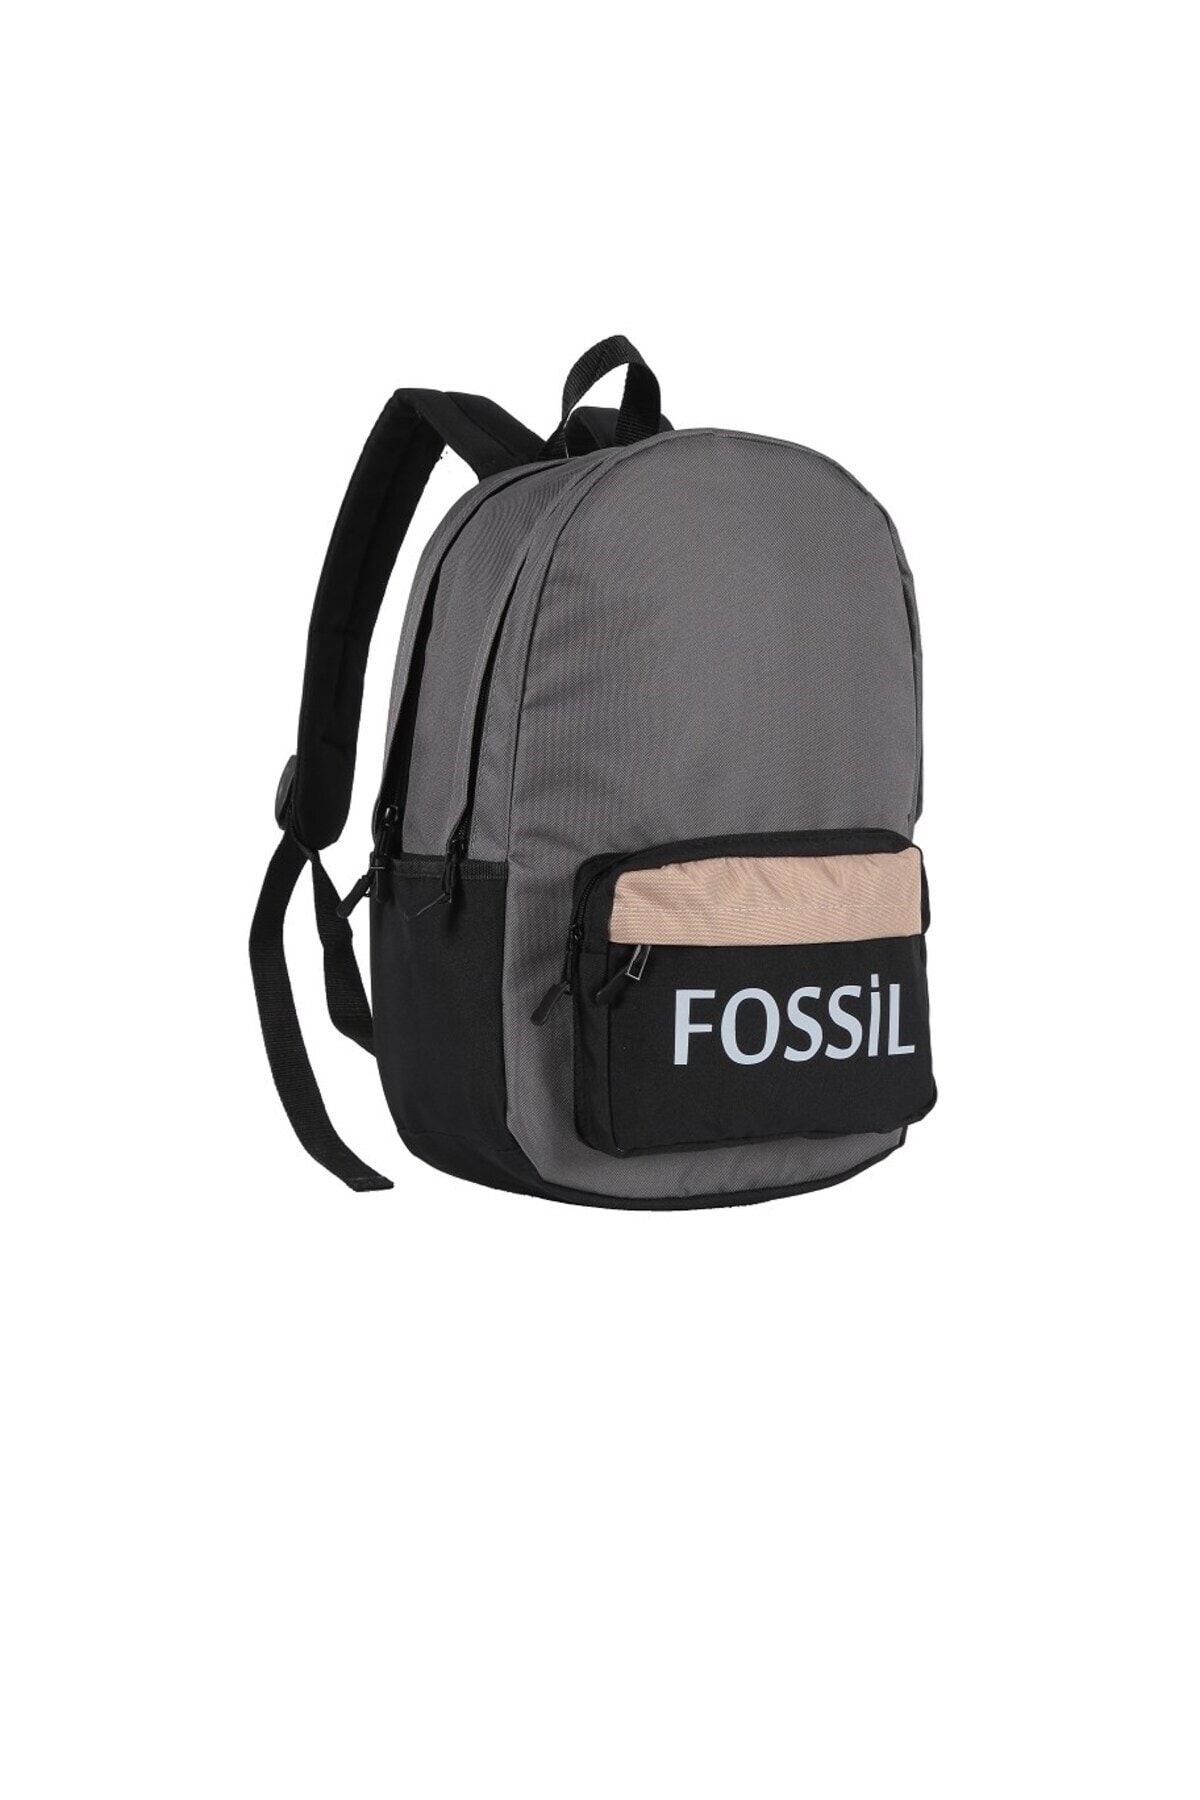 Fossil Sırt Çantası-9504-111